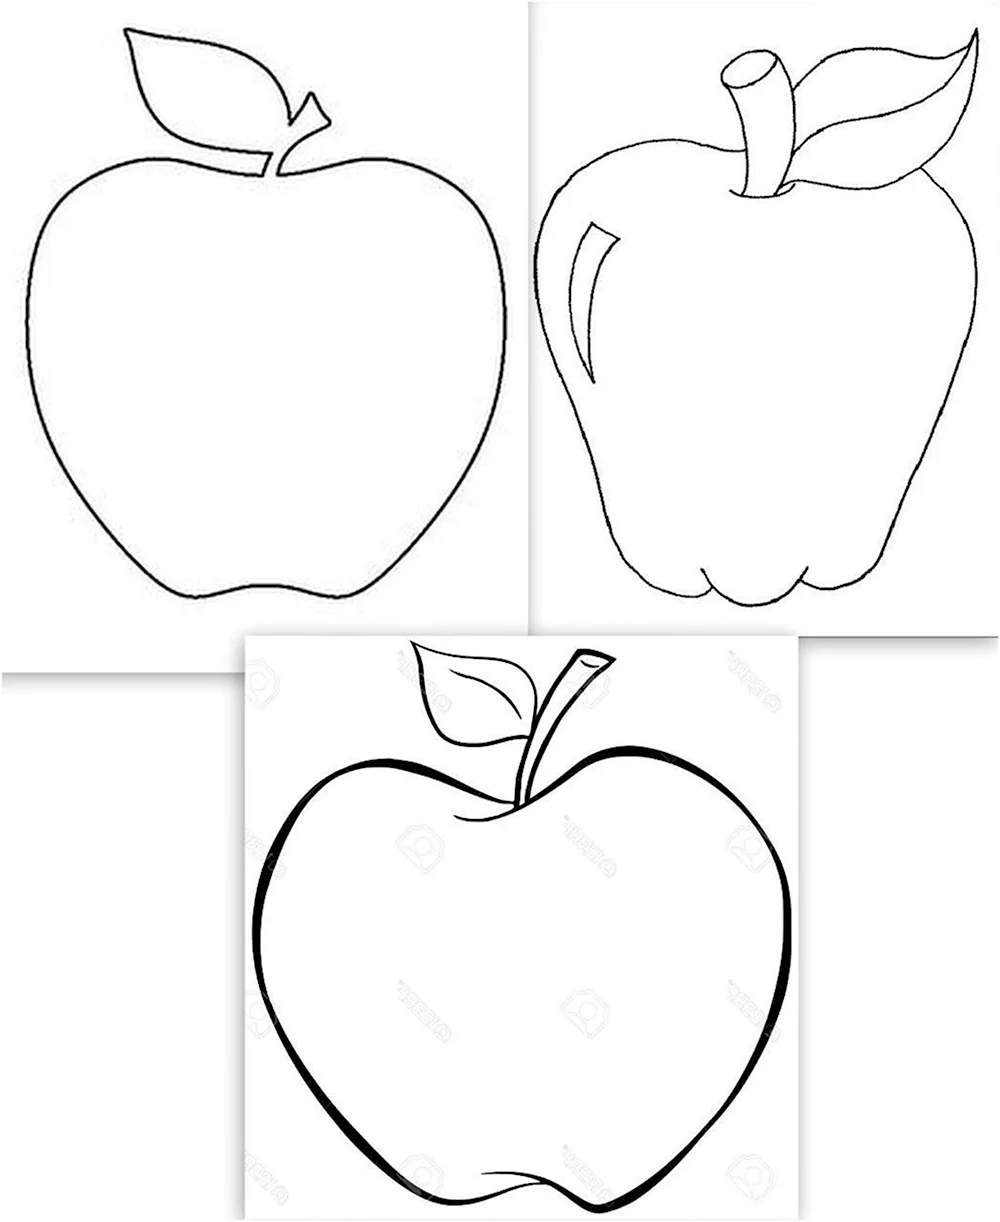 Нарисовать яблоко поэтапно